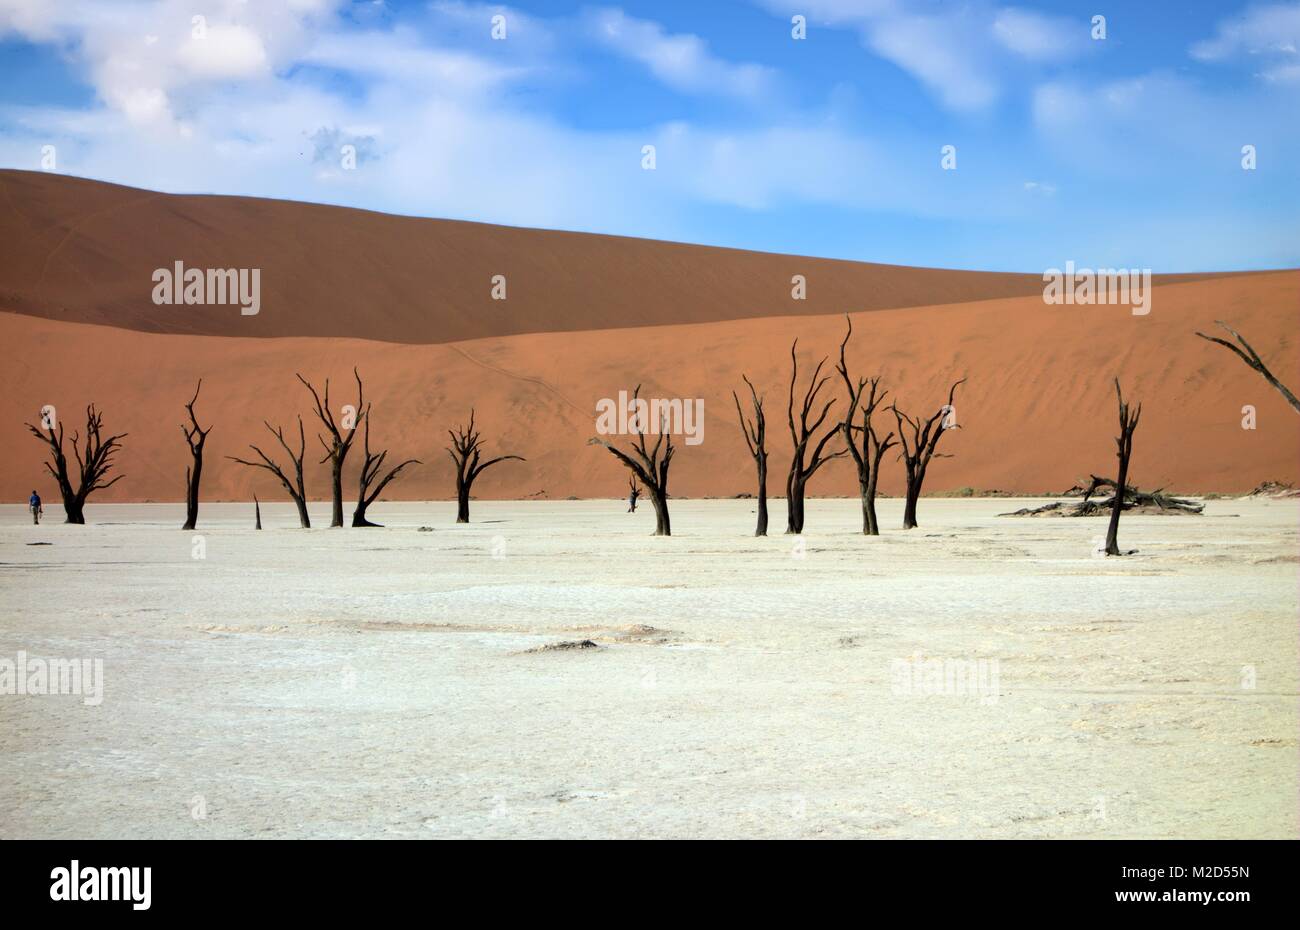 Skeleton trees at Deadvlei, Namibia Stock Photo